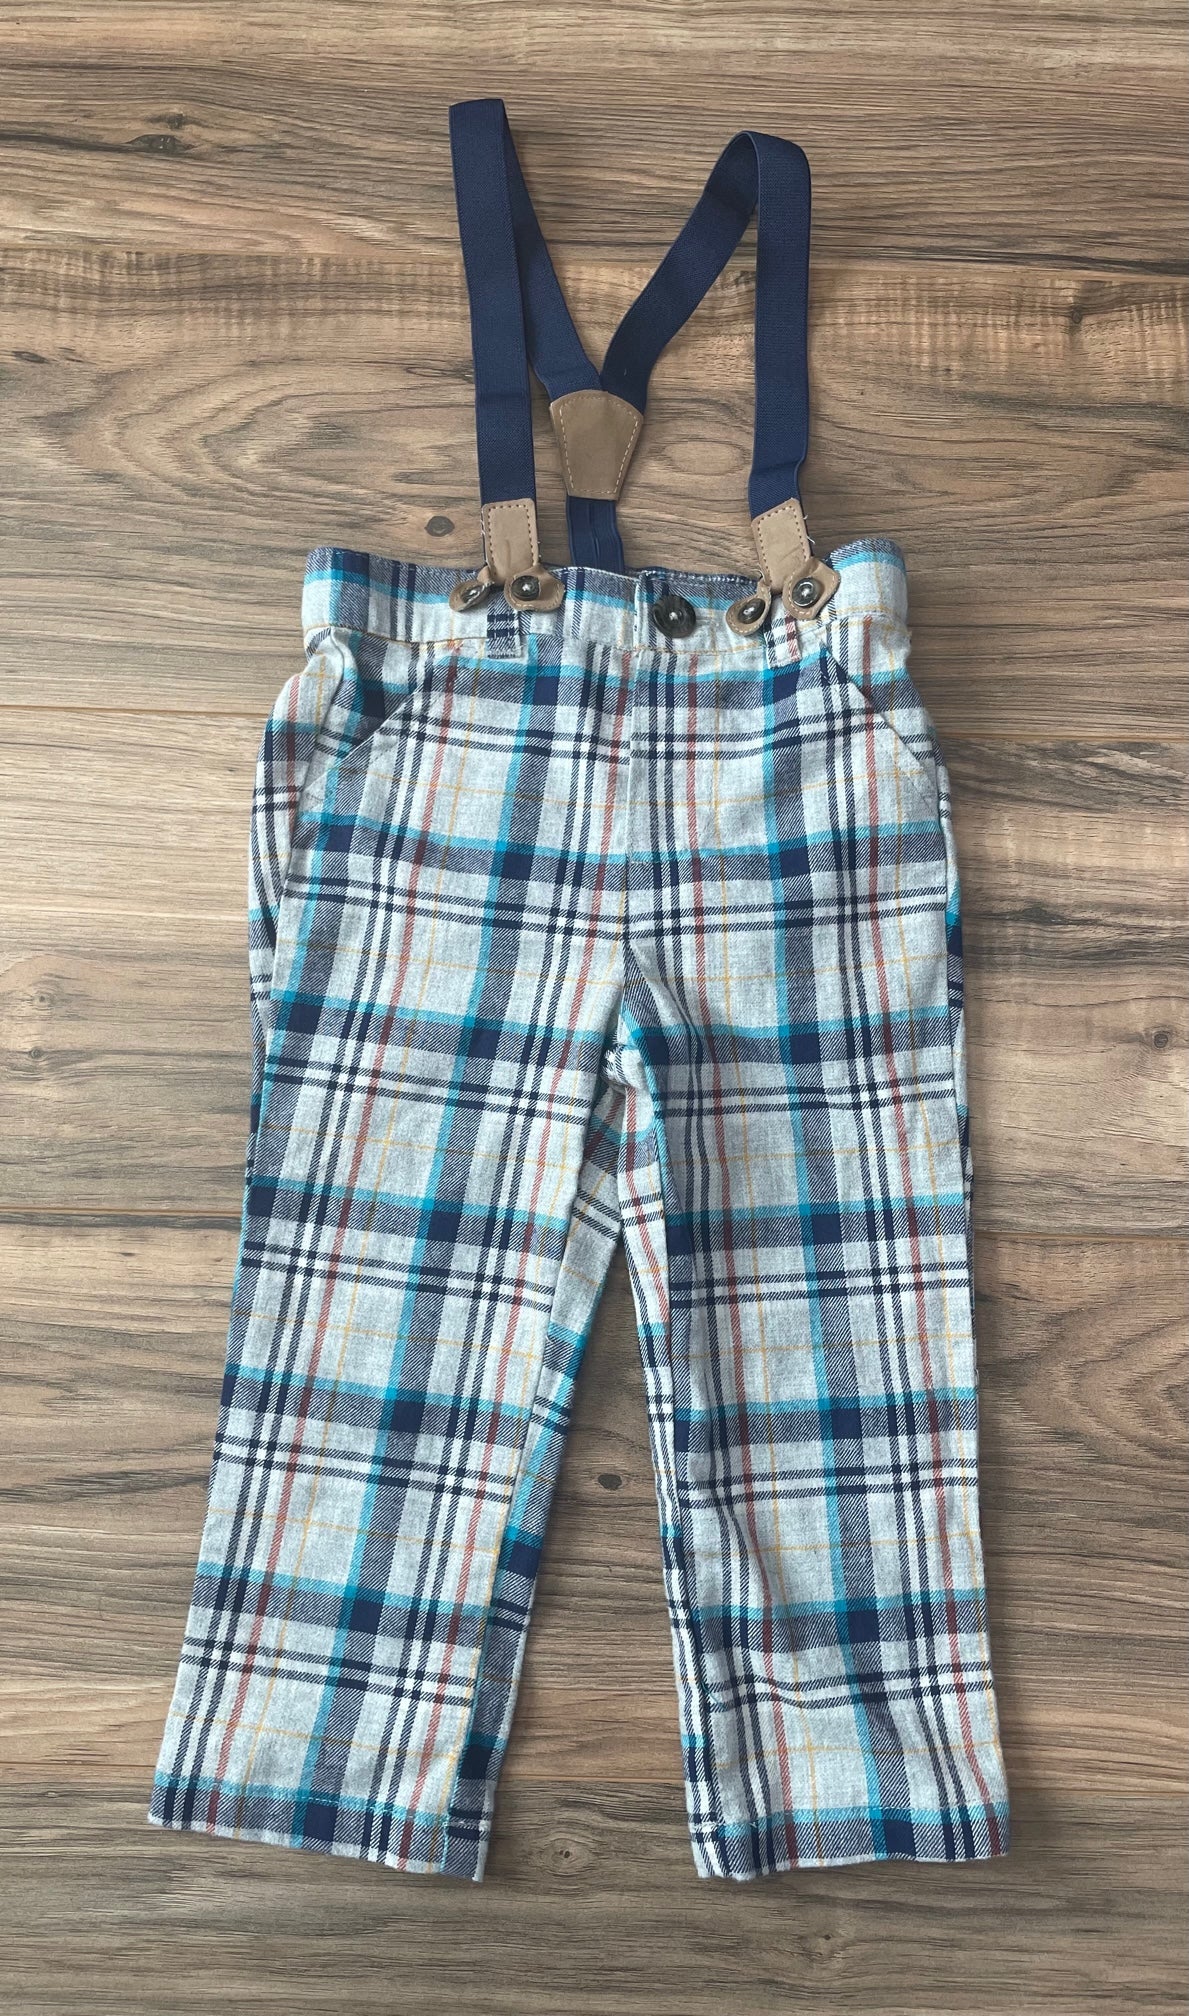 18m Cat & Jack plaid flannel pants with detachable suspenders